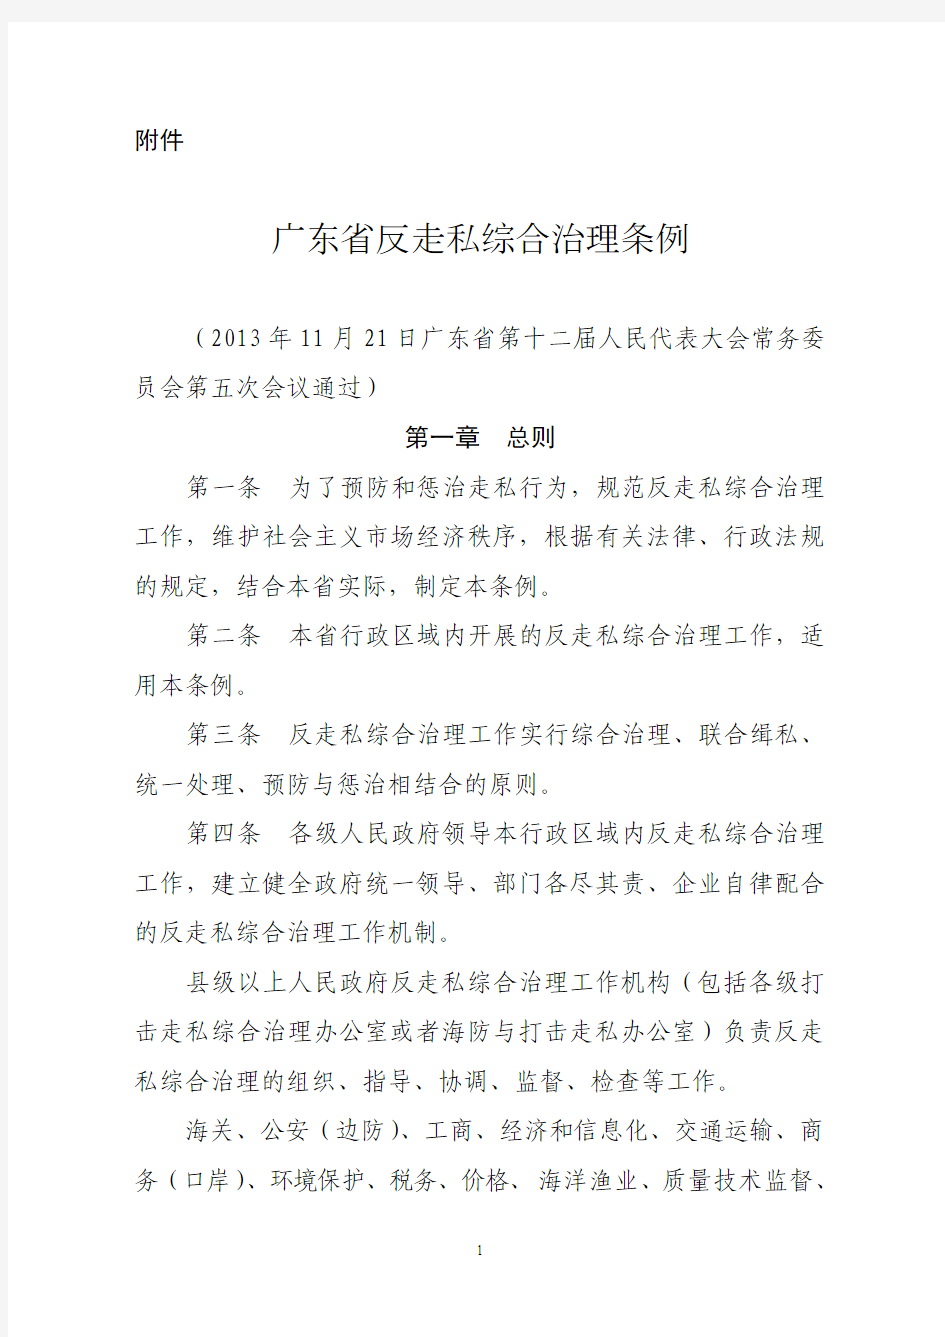 《广东省反走私综合治理条例》(2014年3月1日实施)